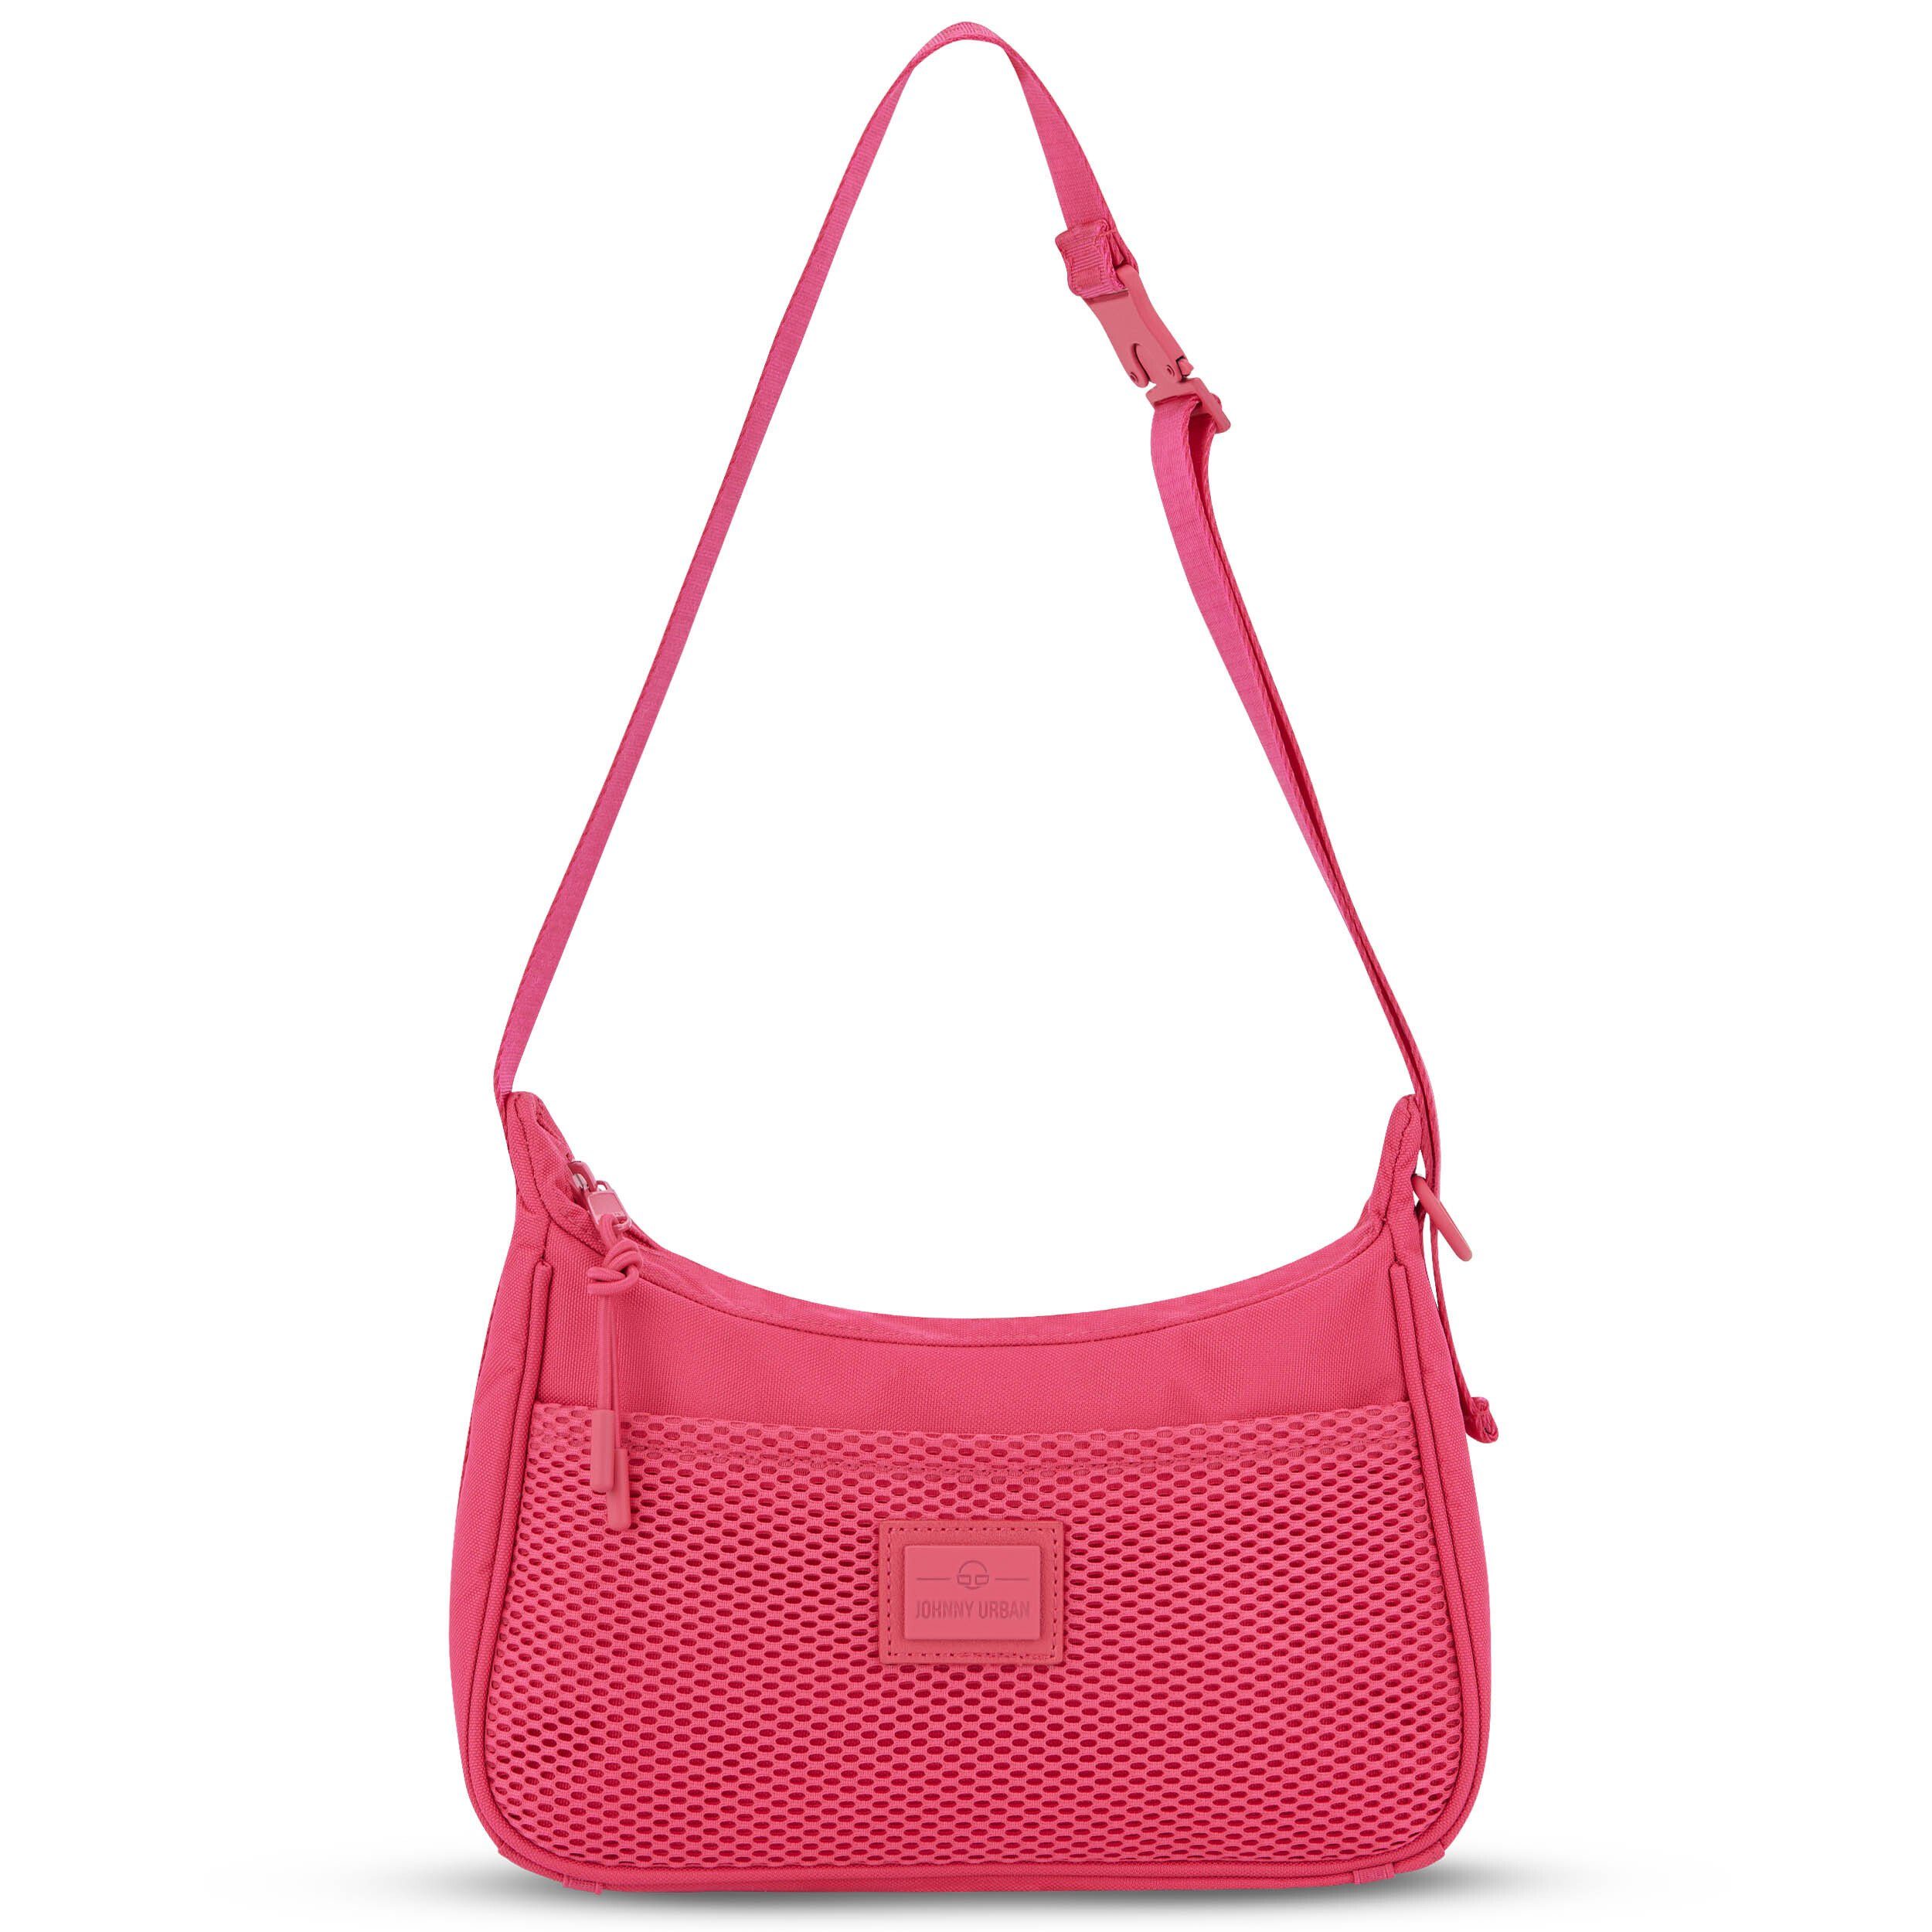 Johnny Urban Handtasche MADDY Handtasche Damen, Stylische Umhängetasche, Wasserabweisend Pink